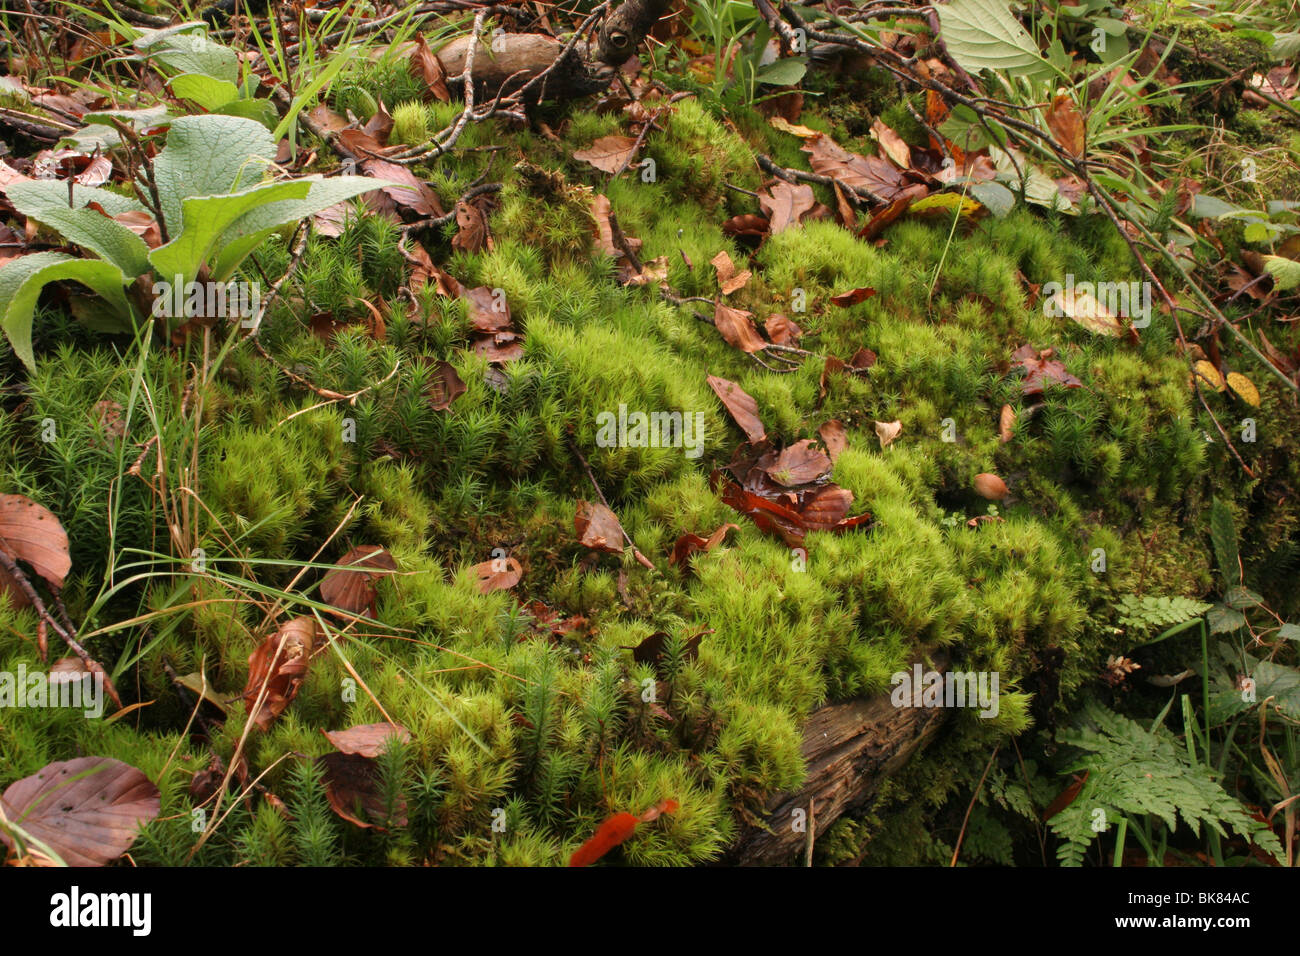 Broom fork-moss (Dicranum scoparium) a Bryophyte moss on an old rotten log, UK. Stock Photo